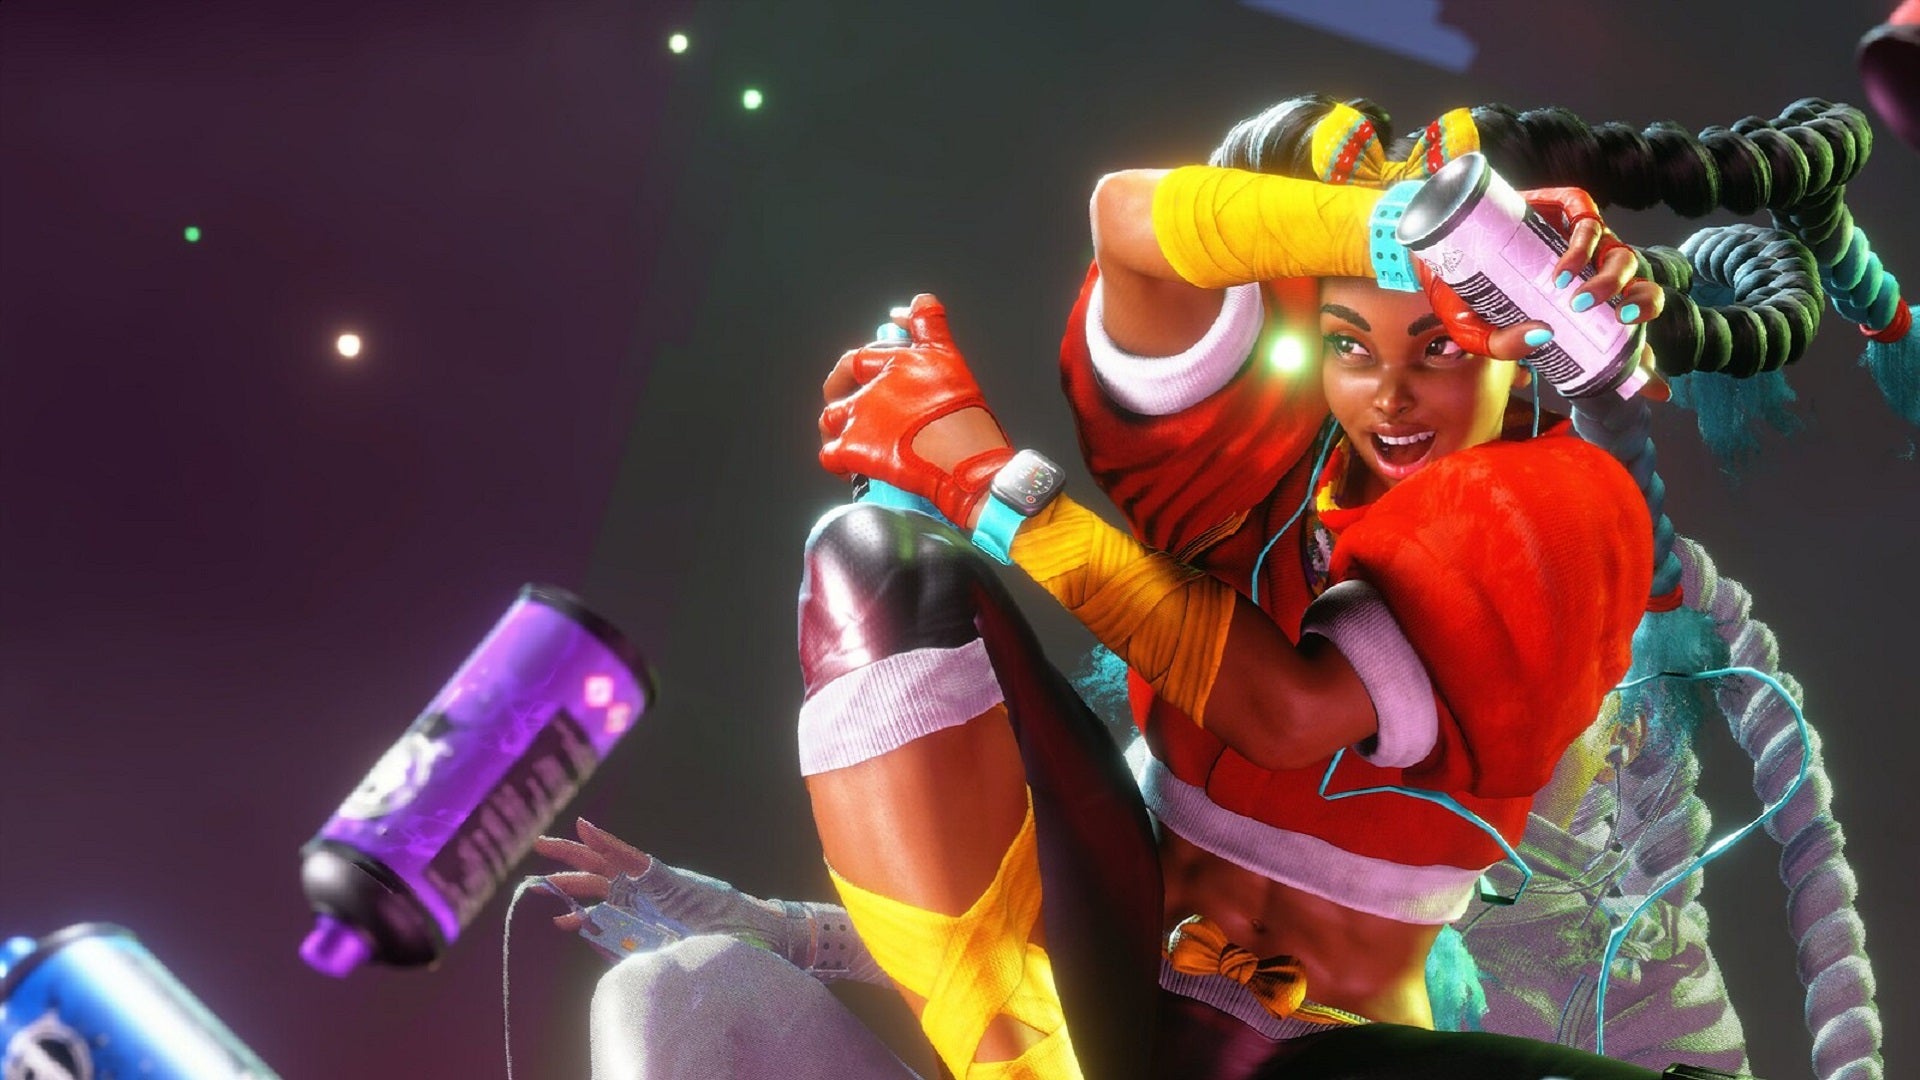 Kimberly de Street Fighter 6, posando com suas latas de spray (via trailer de revelação do Evo 2022).